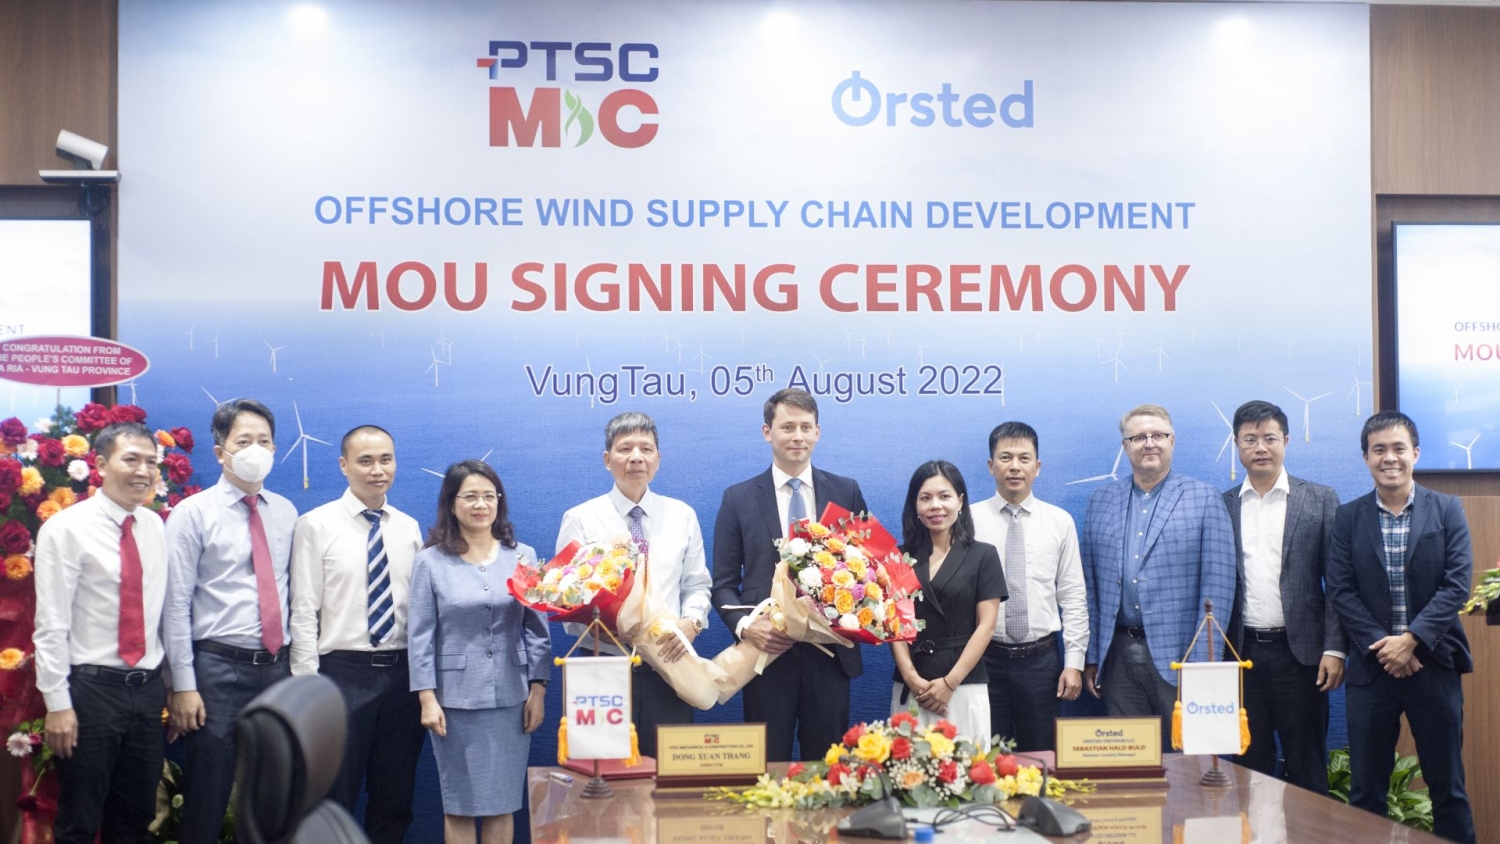 PTSC M&C khởi động quan hệ hợp tác với Ørsted trong các dự án điện gió ngoài khơi”